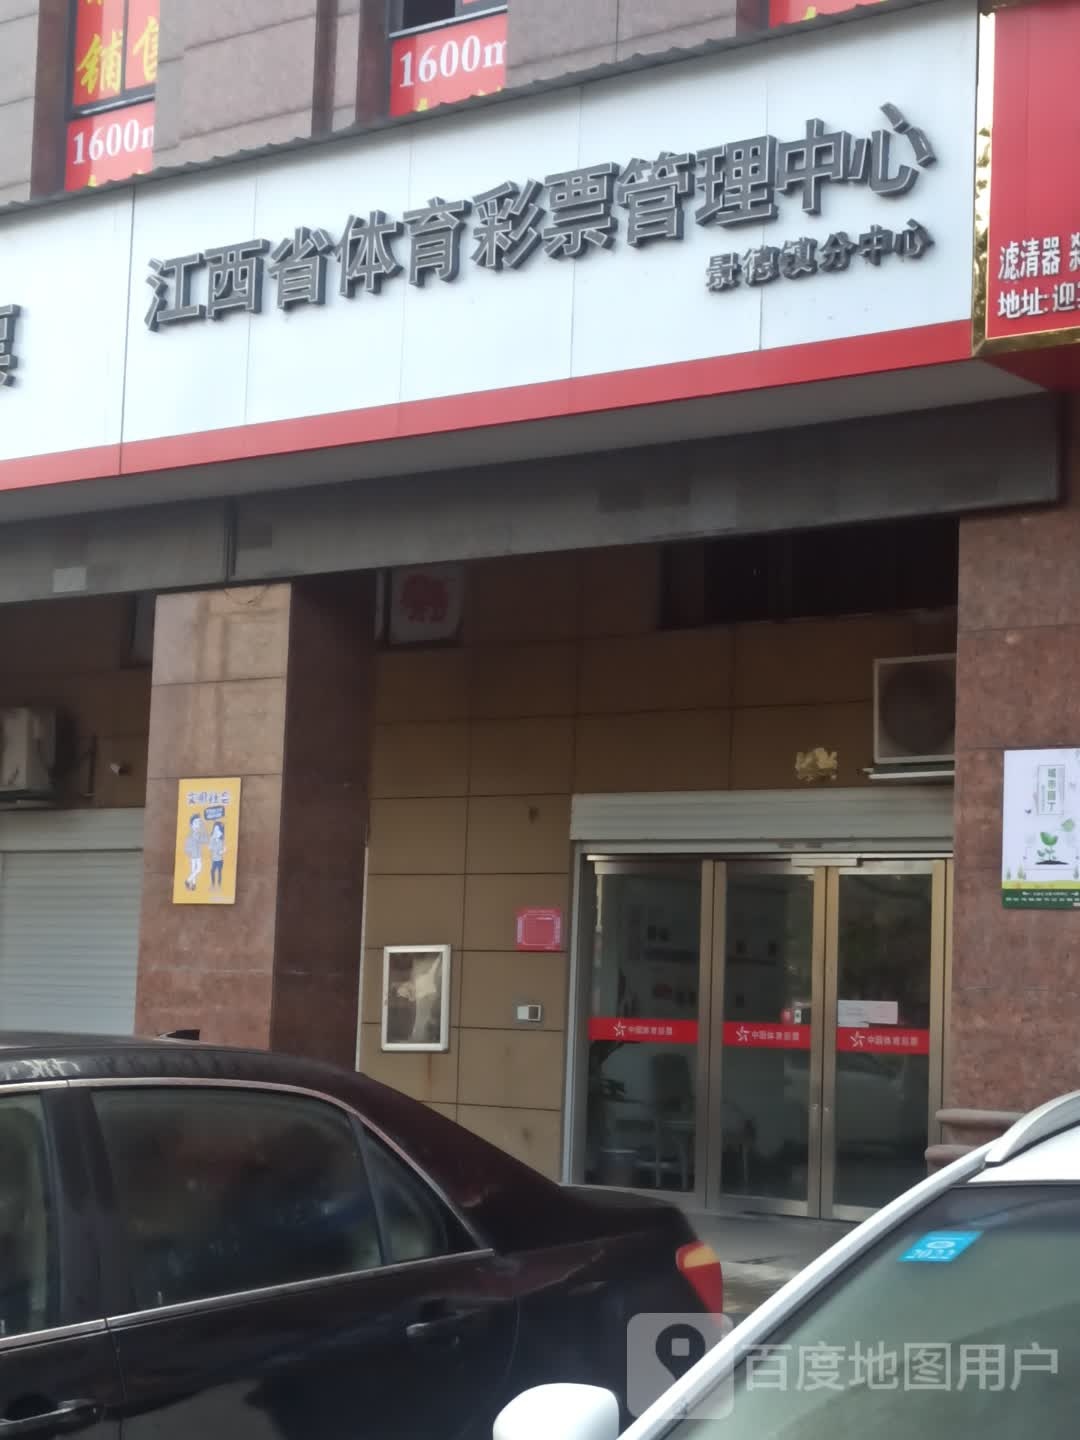 江西省体育彩票管理中心景德镇分中心